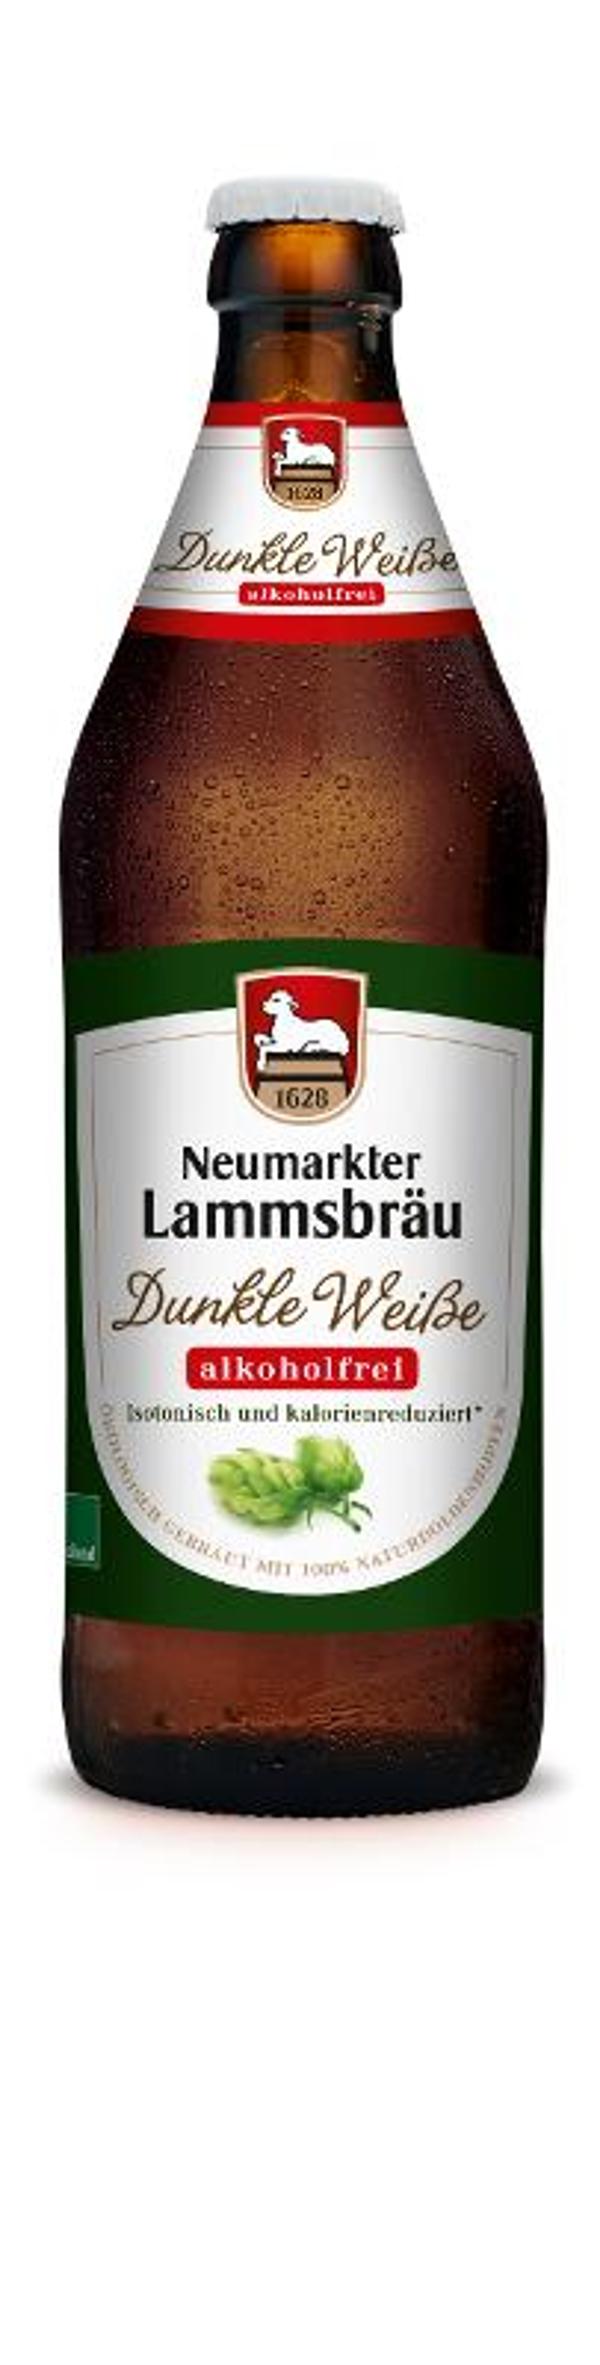 Produktfoto zu Lammsbraü Dunkle Weisse alkoholfrei